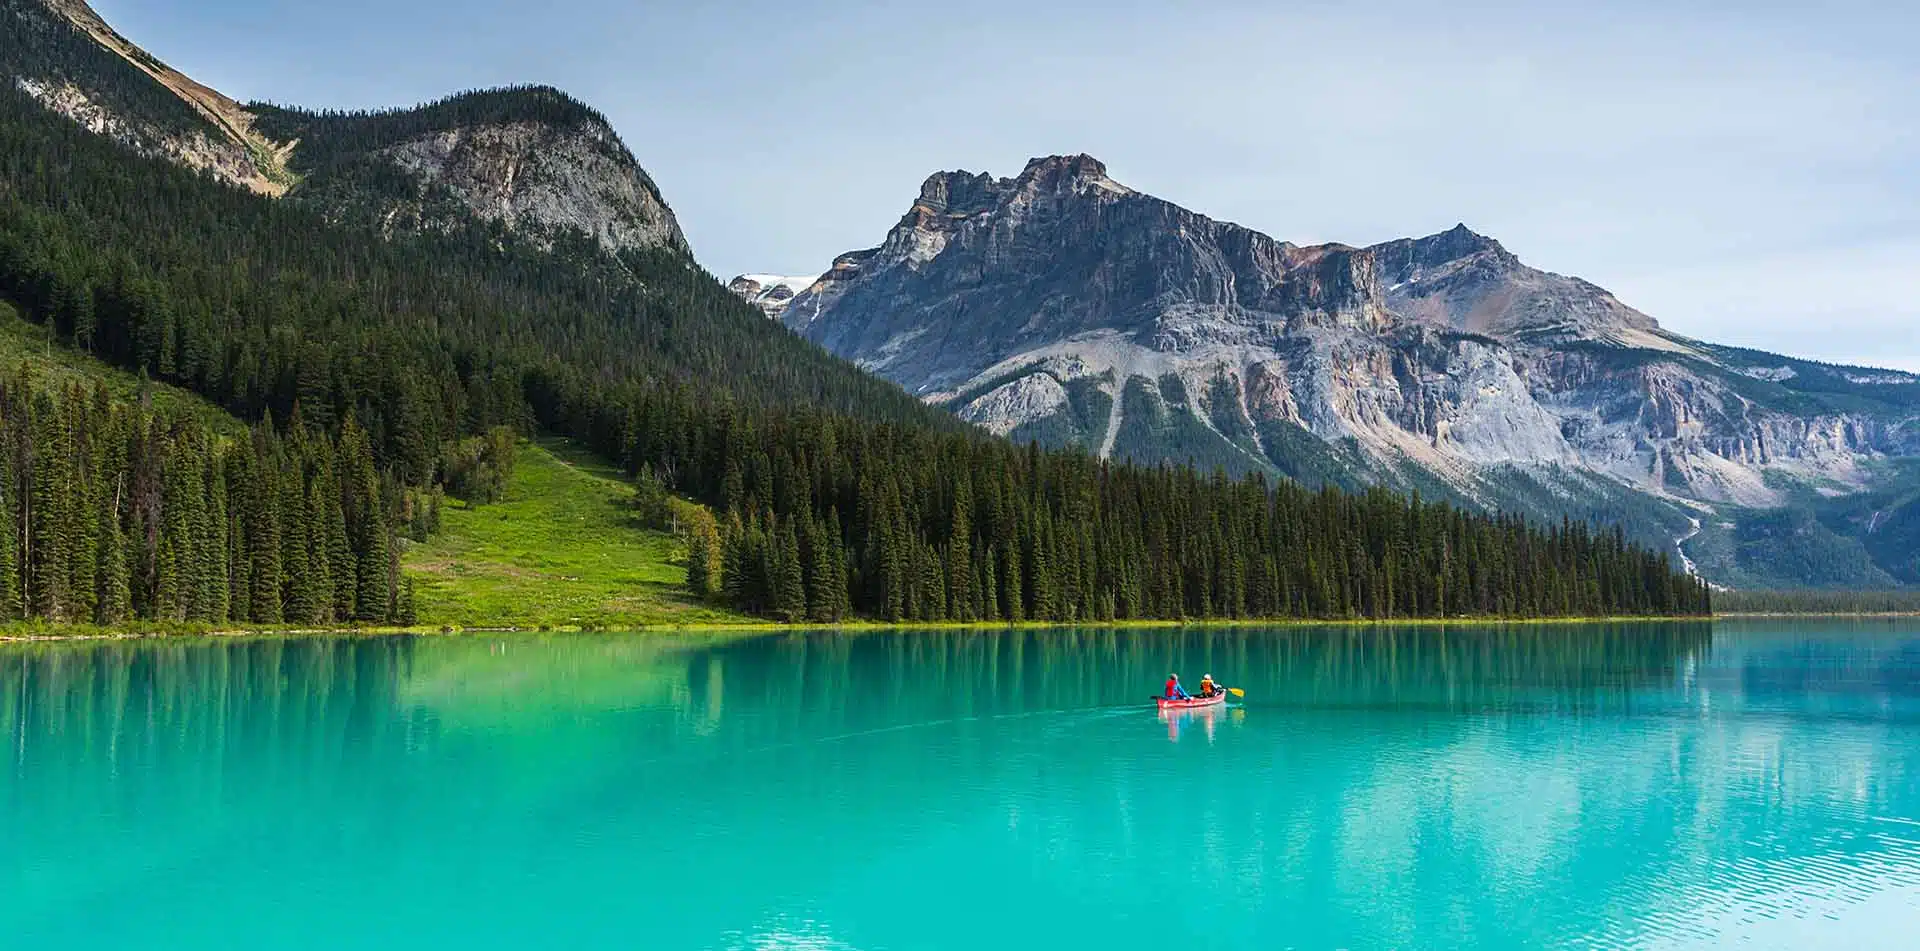 Kayak on Emerald Lake, Canadian Rockies